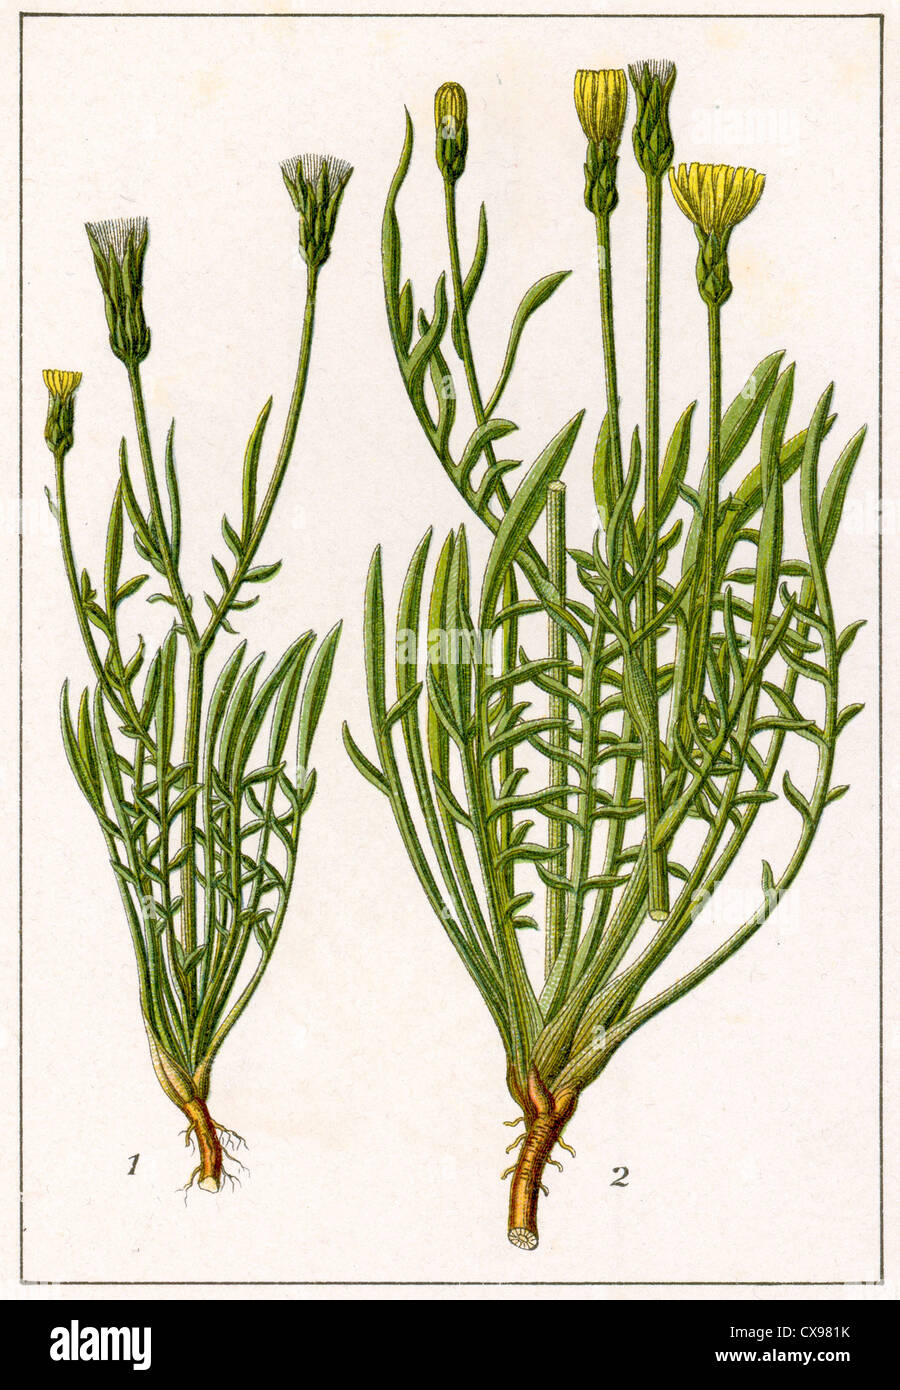 Podospermum laciniatum - Podospermum Jacquinianum Stock Photo